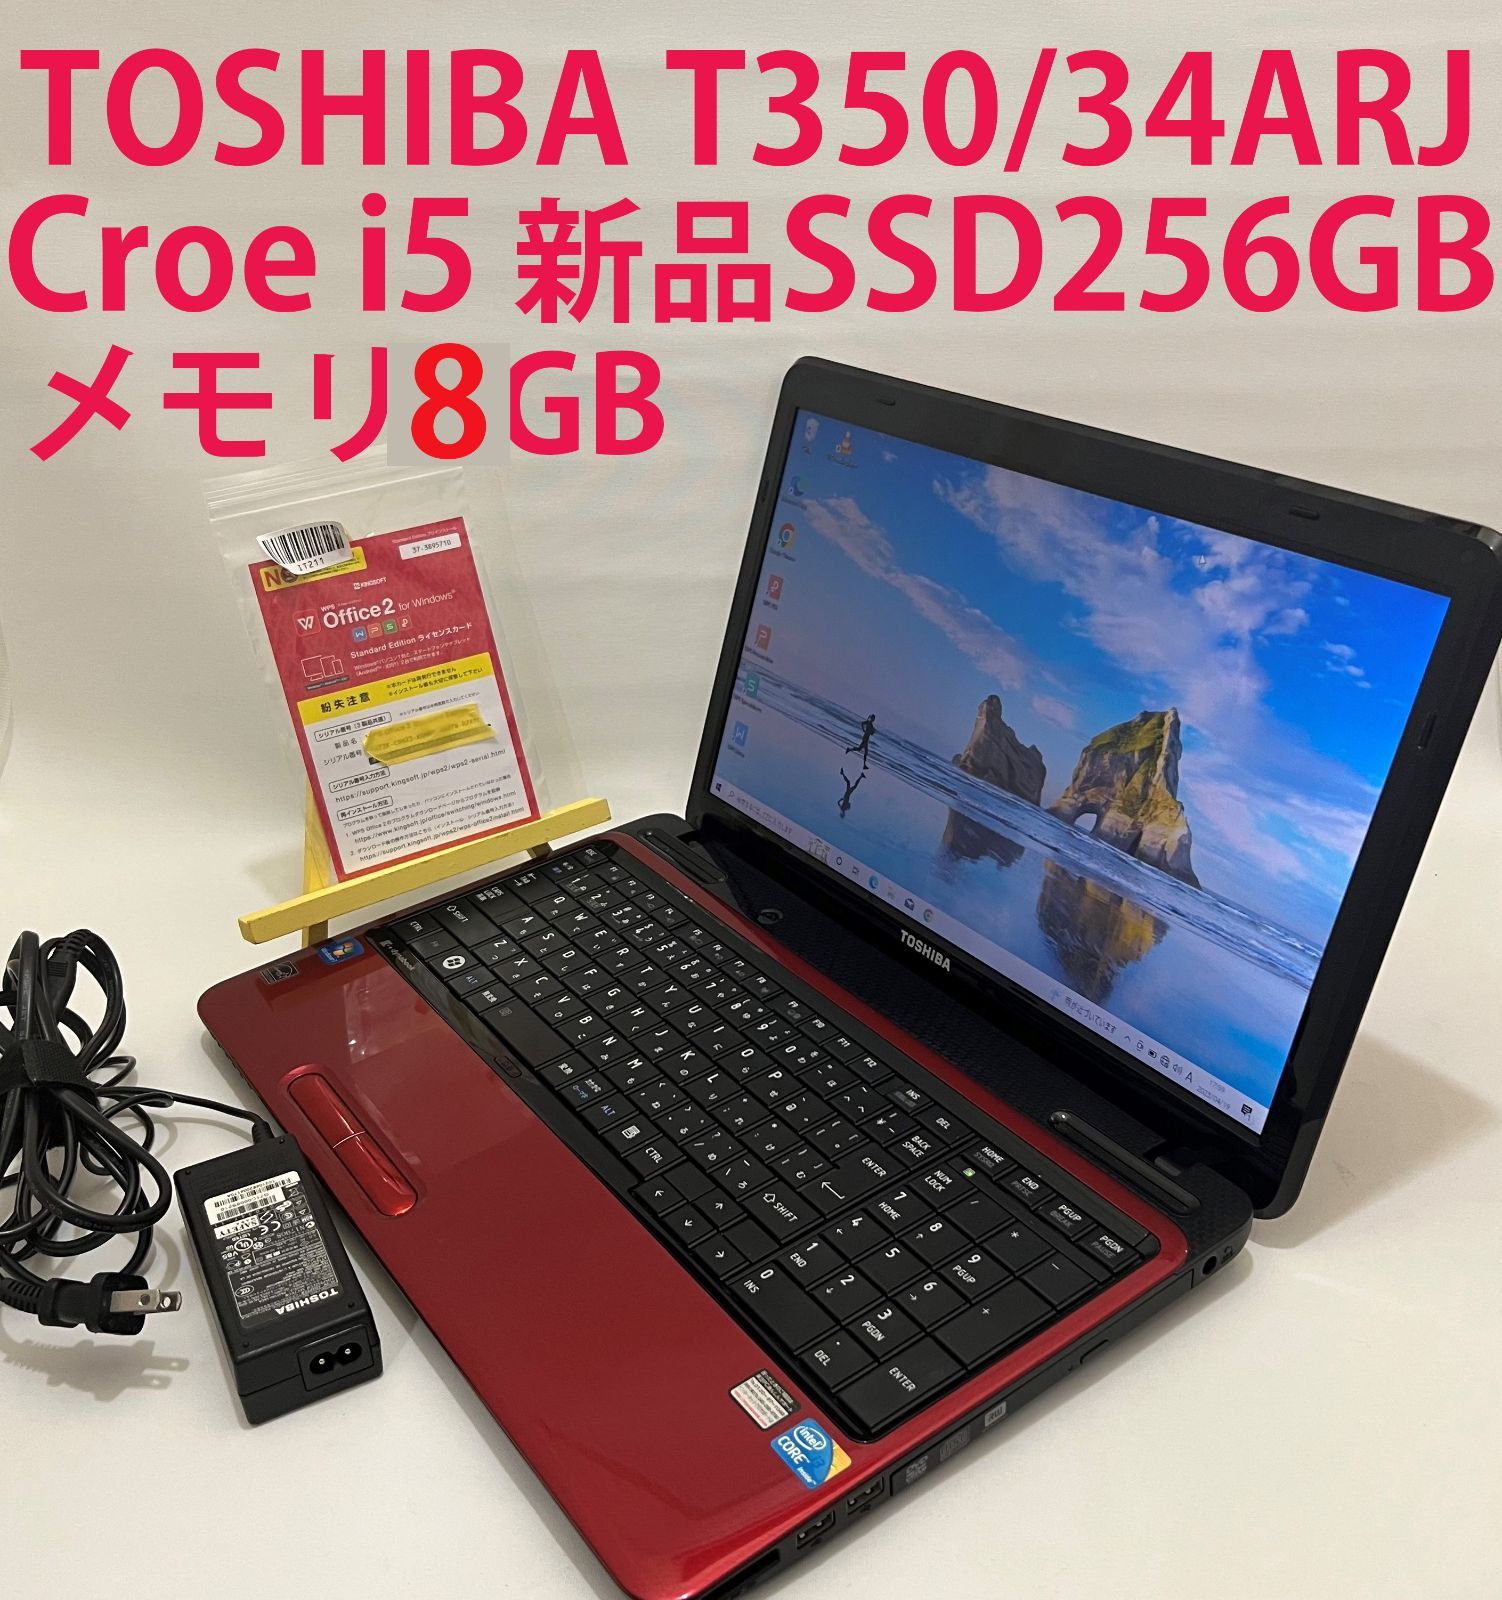 中古TOSHIBA T350/34ARJ Core i5 新品SSD256GB/メモリ8GB ノート 